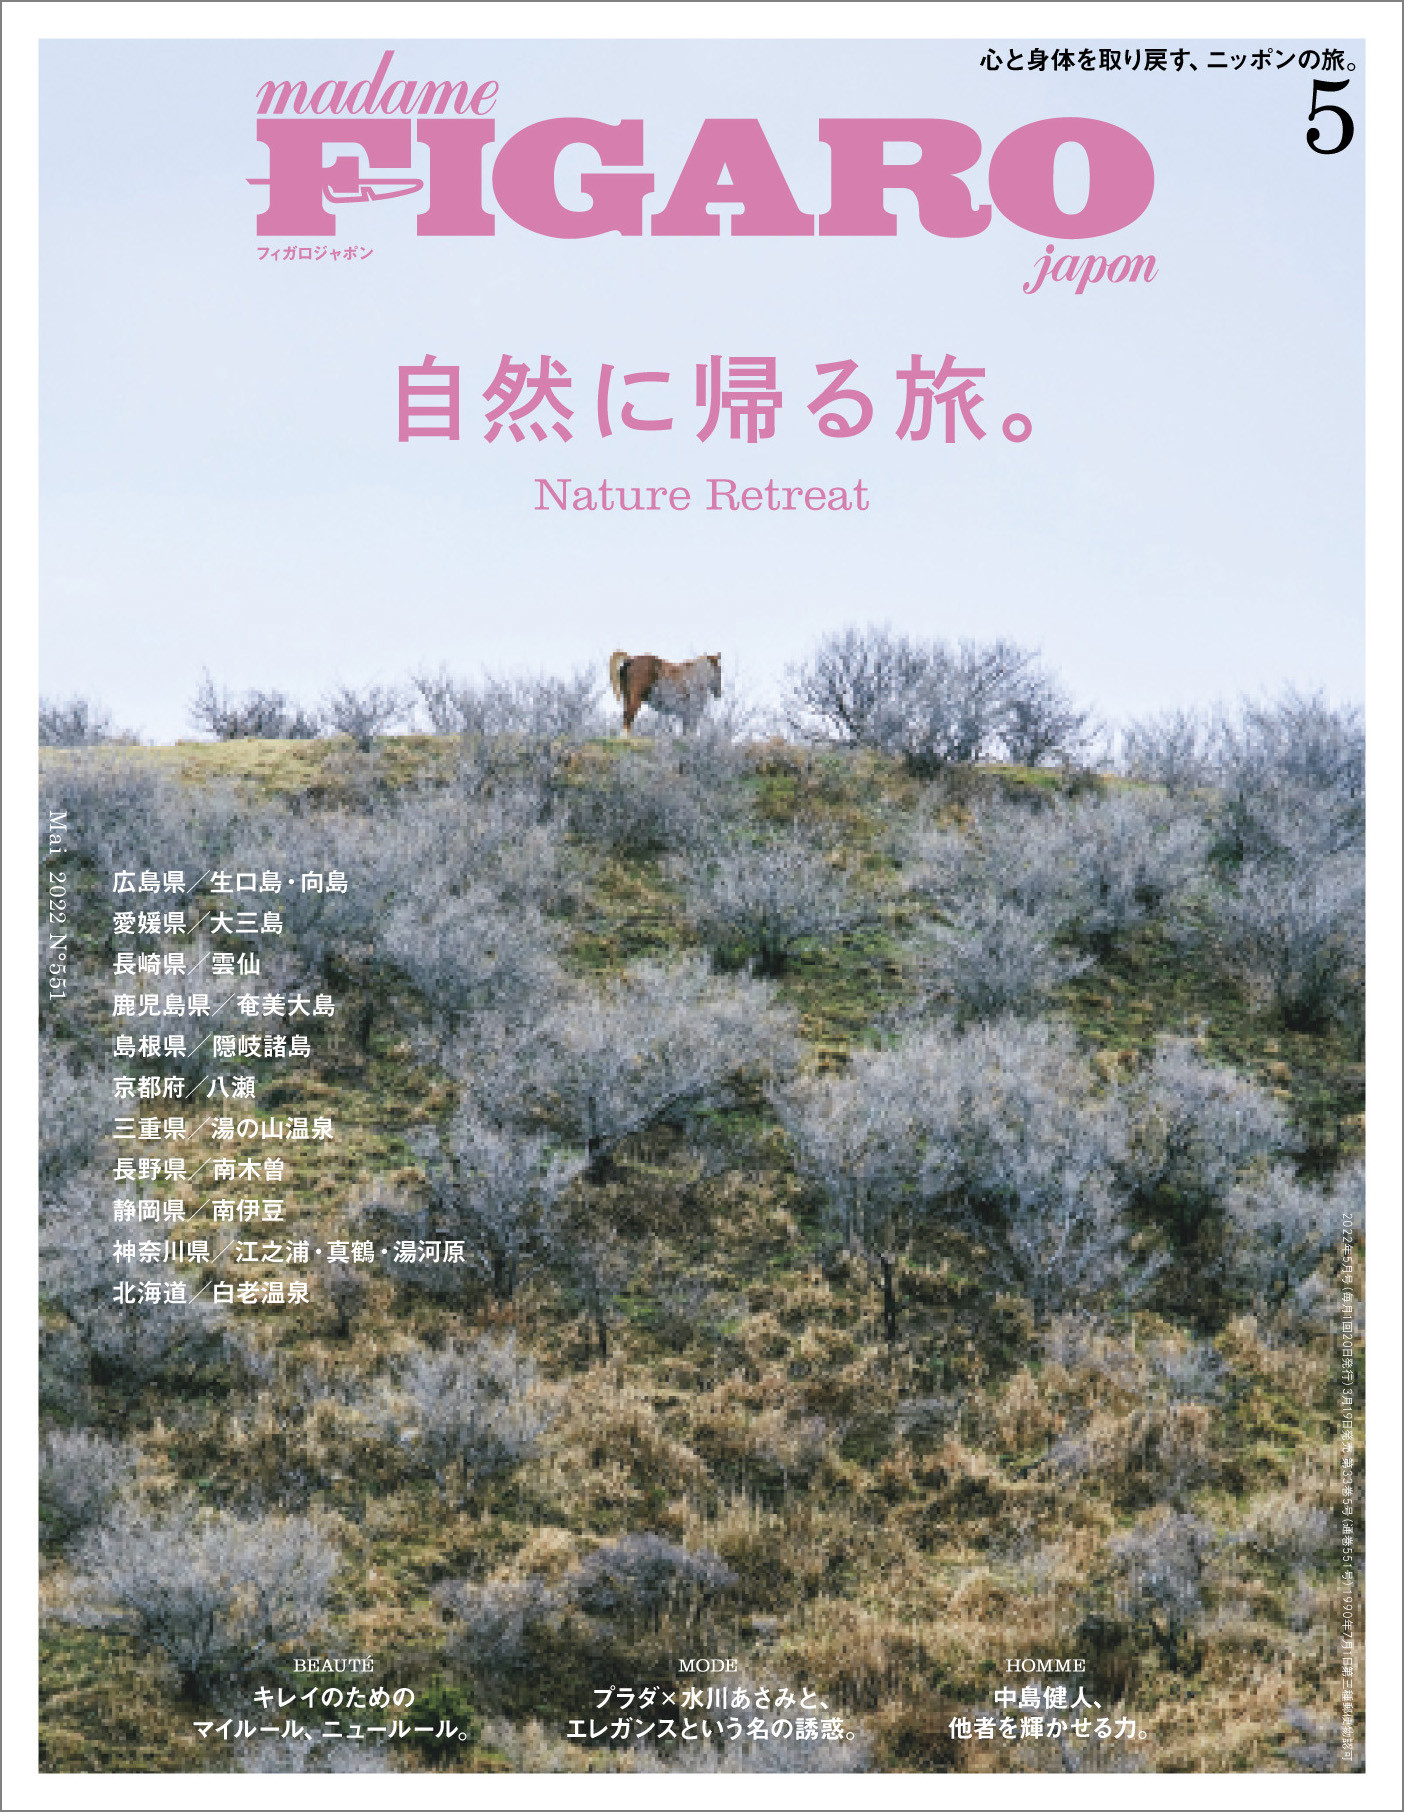 自然に帰る旅。 | Magazine｜madame FIGARO.jp（フィガロジャポン）